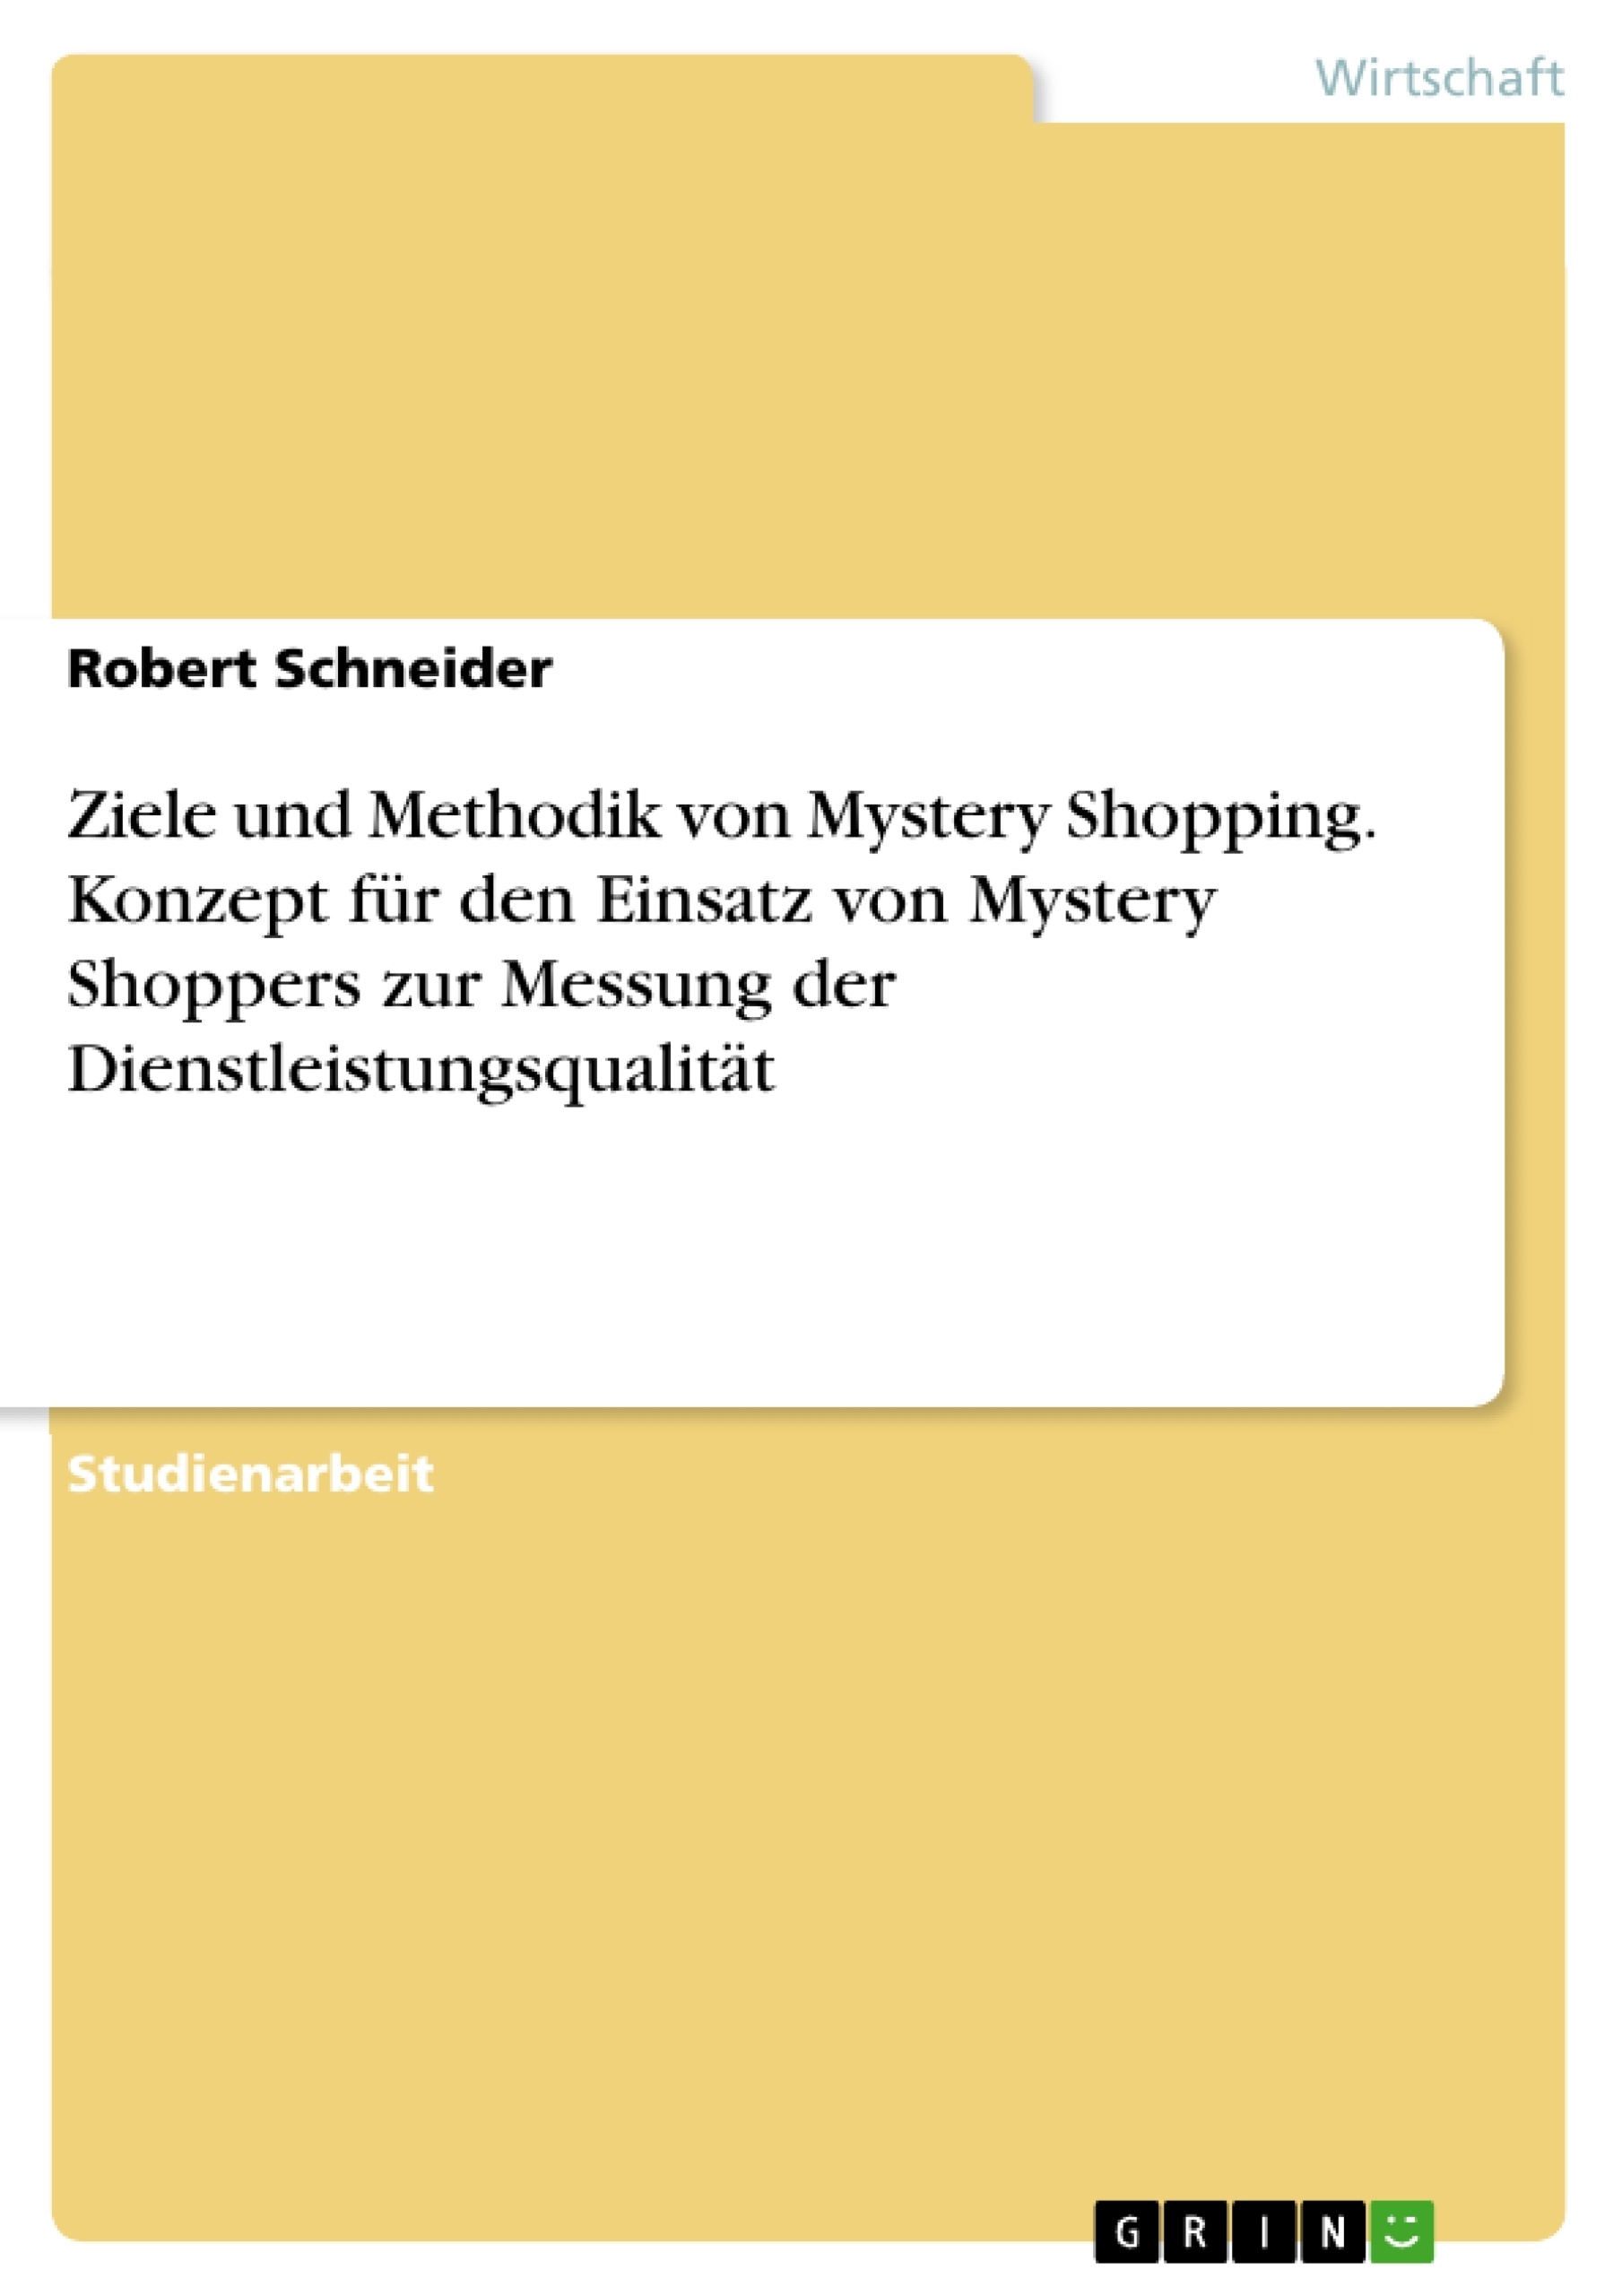 Título: Ziele und Methodik von Mystery Shopping. Konzept für den Einsatz von Mystery Shoppers zur Messung der Dienstleistungsqualität